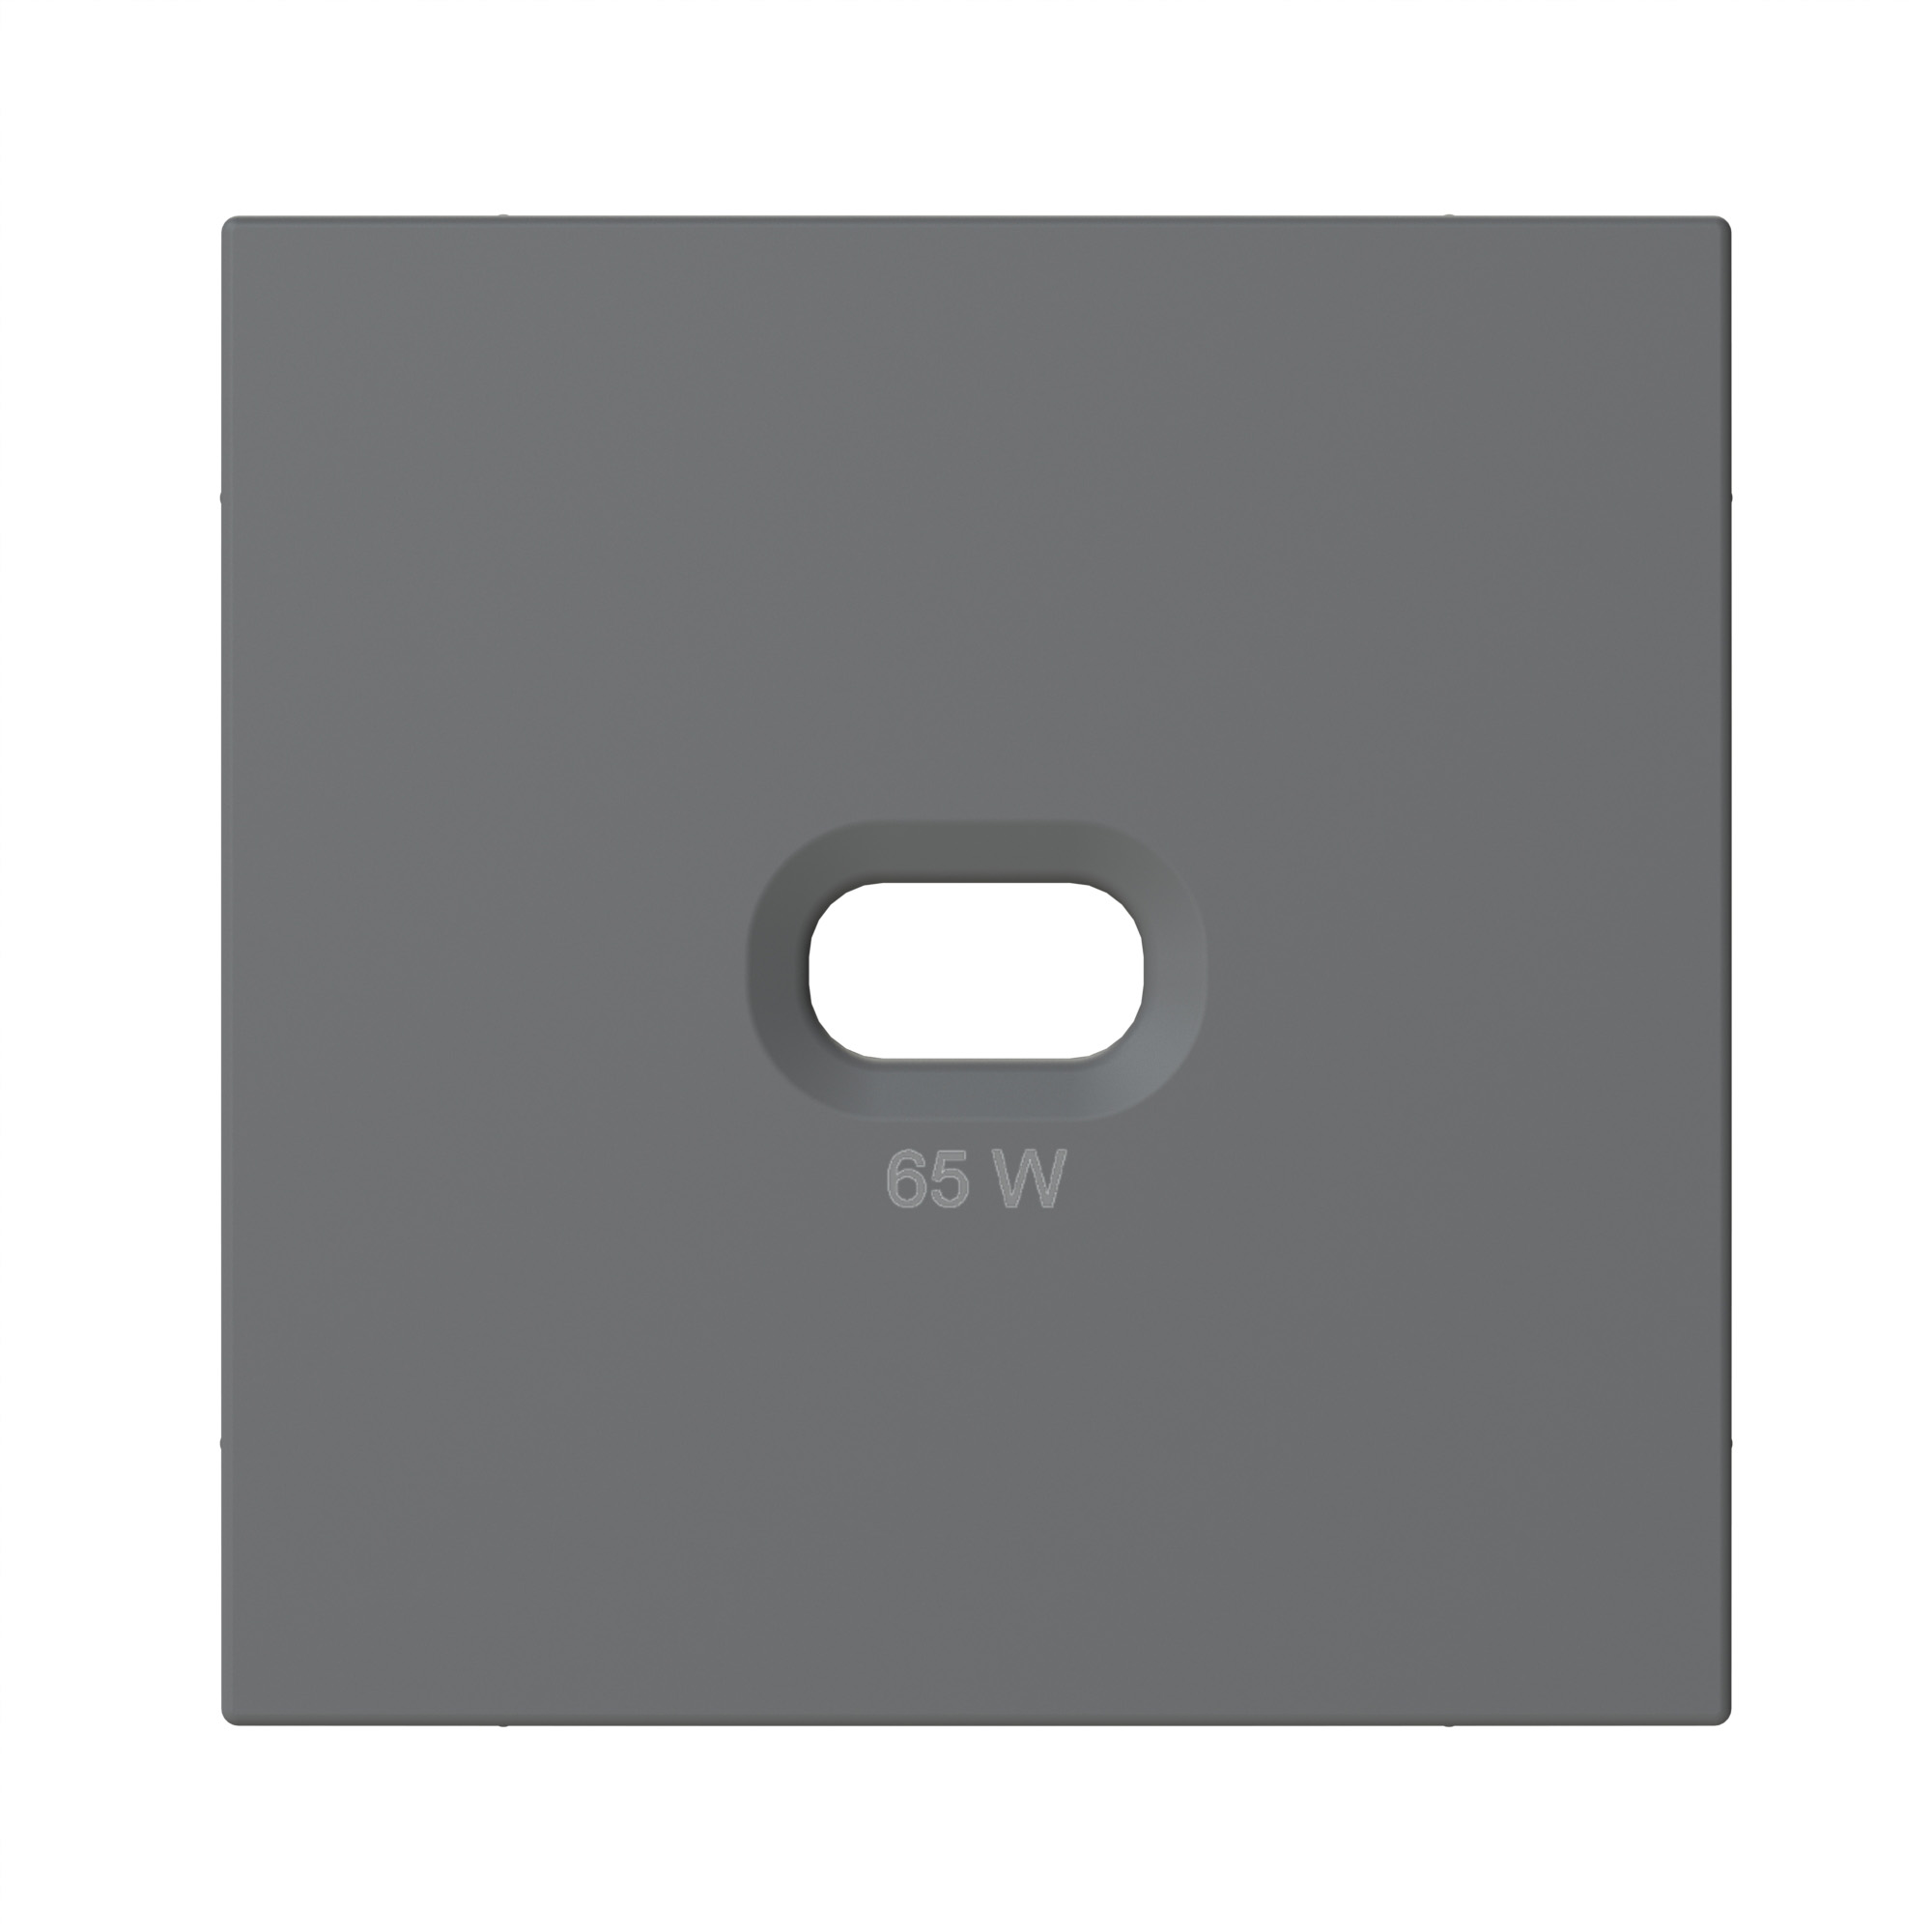 Abdeckplatte für USB-C Steckdose 65 W anthrazit-seidenglanz OPUS 55